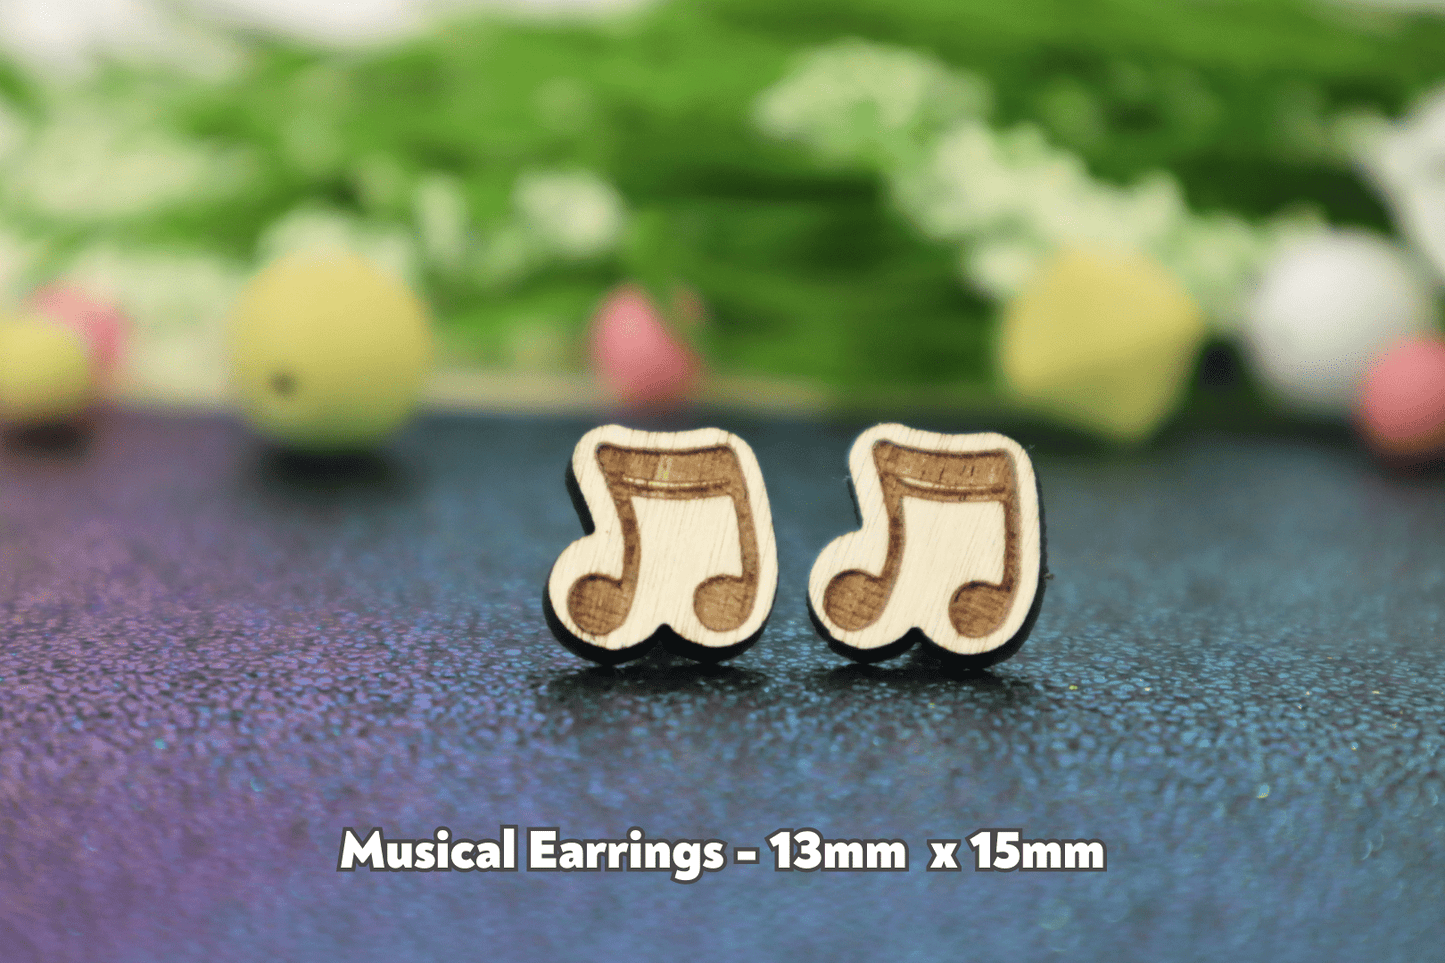 Musical Earrings